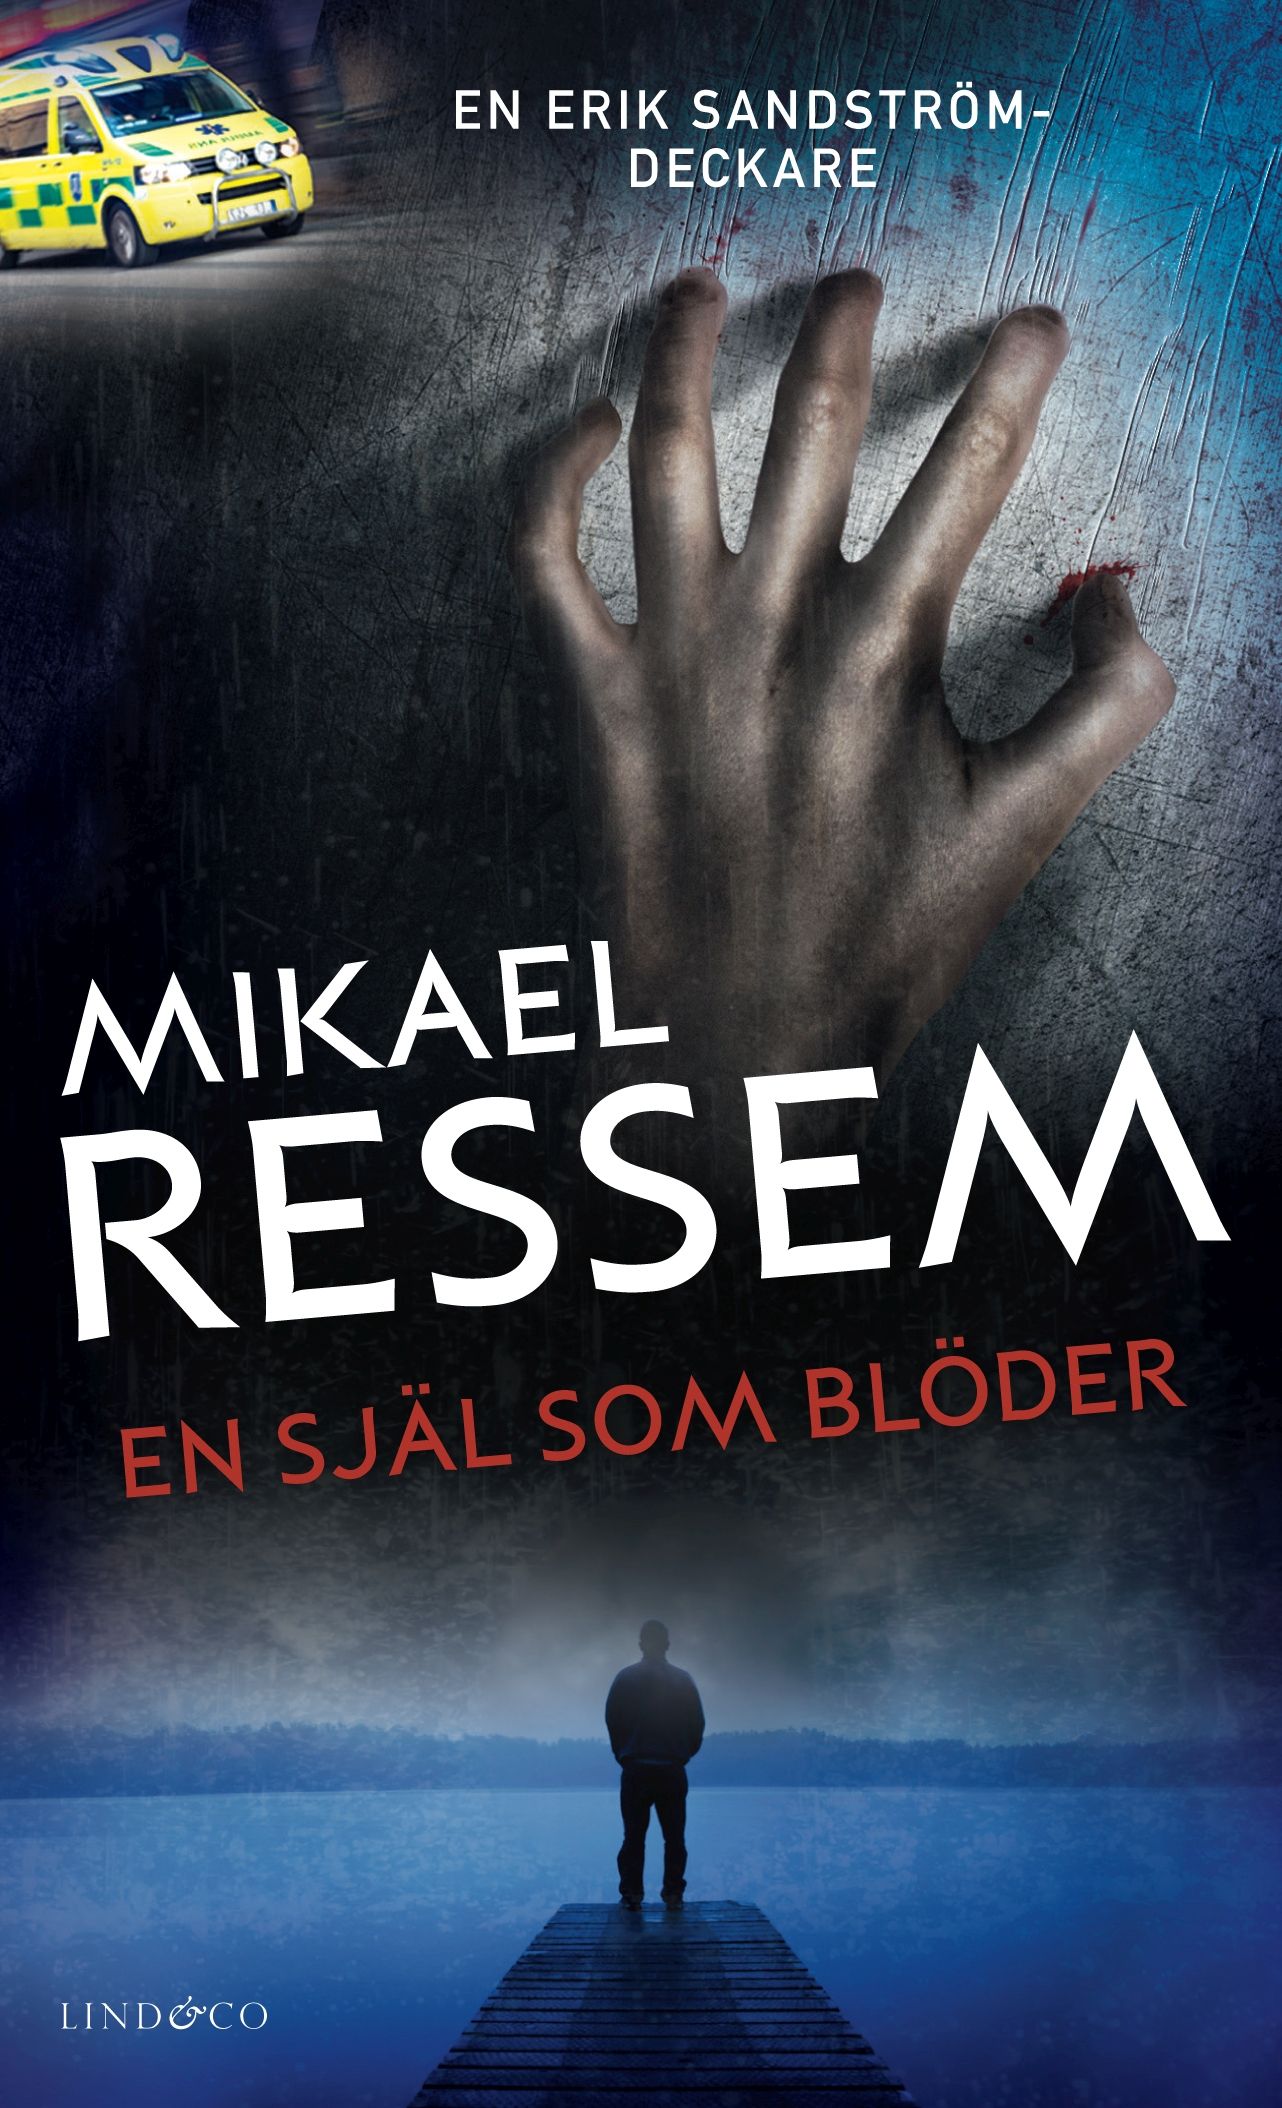 En själ som blöder, eBook by Mikael Ressem